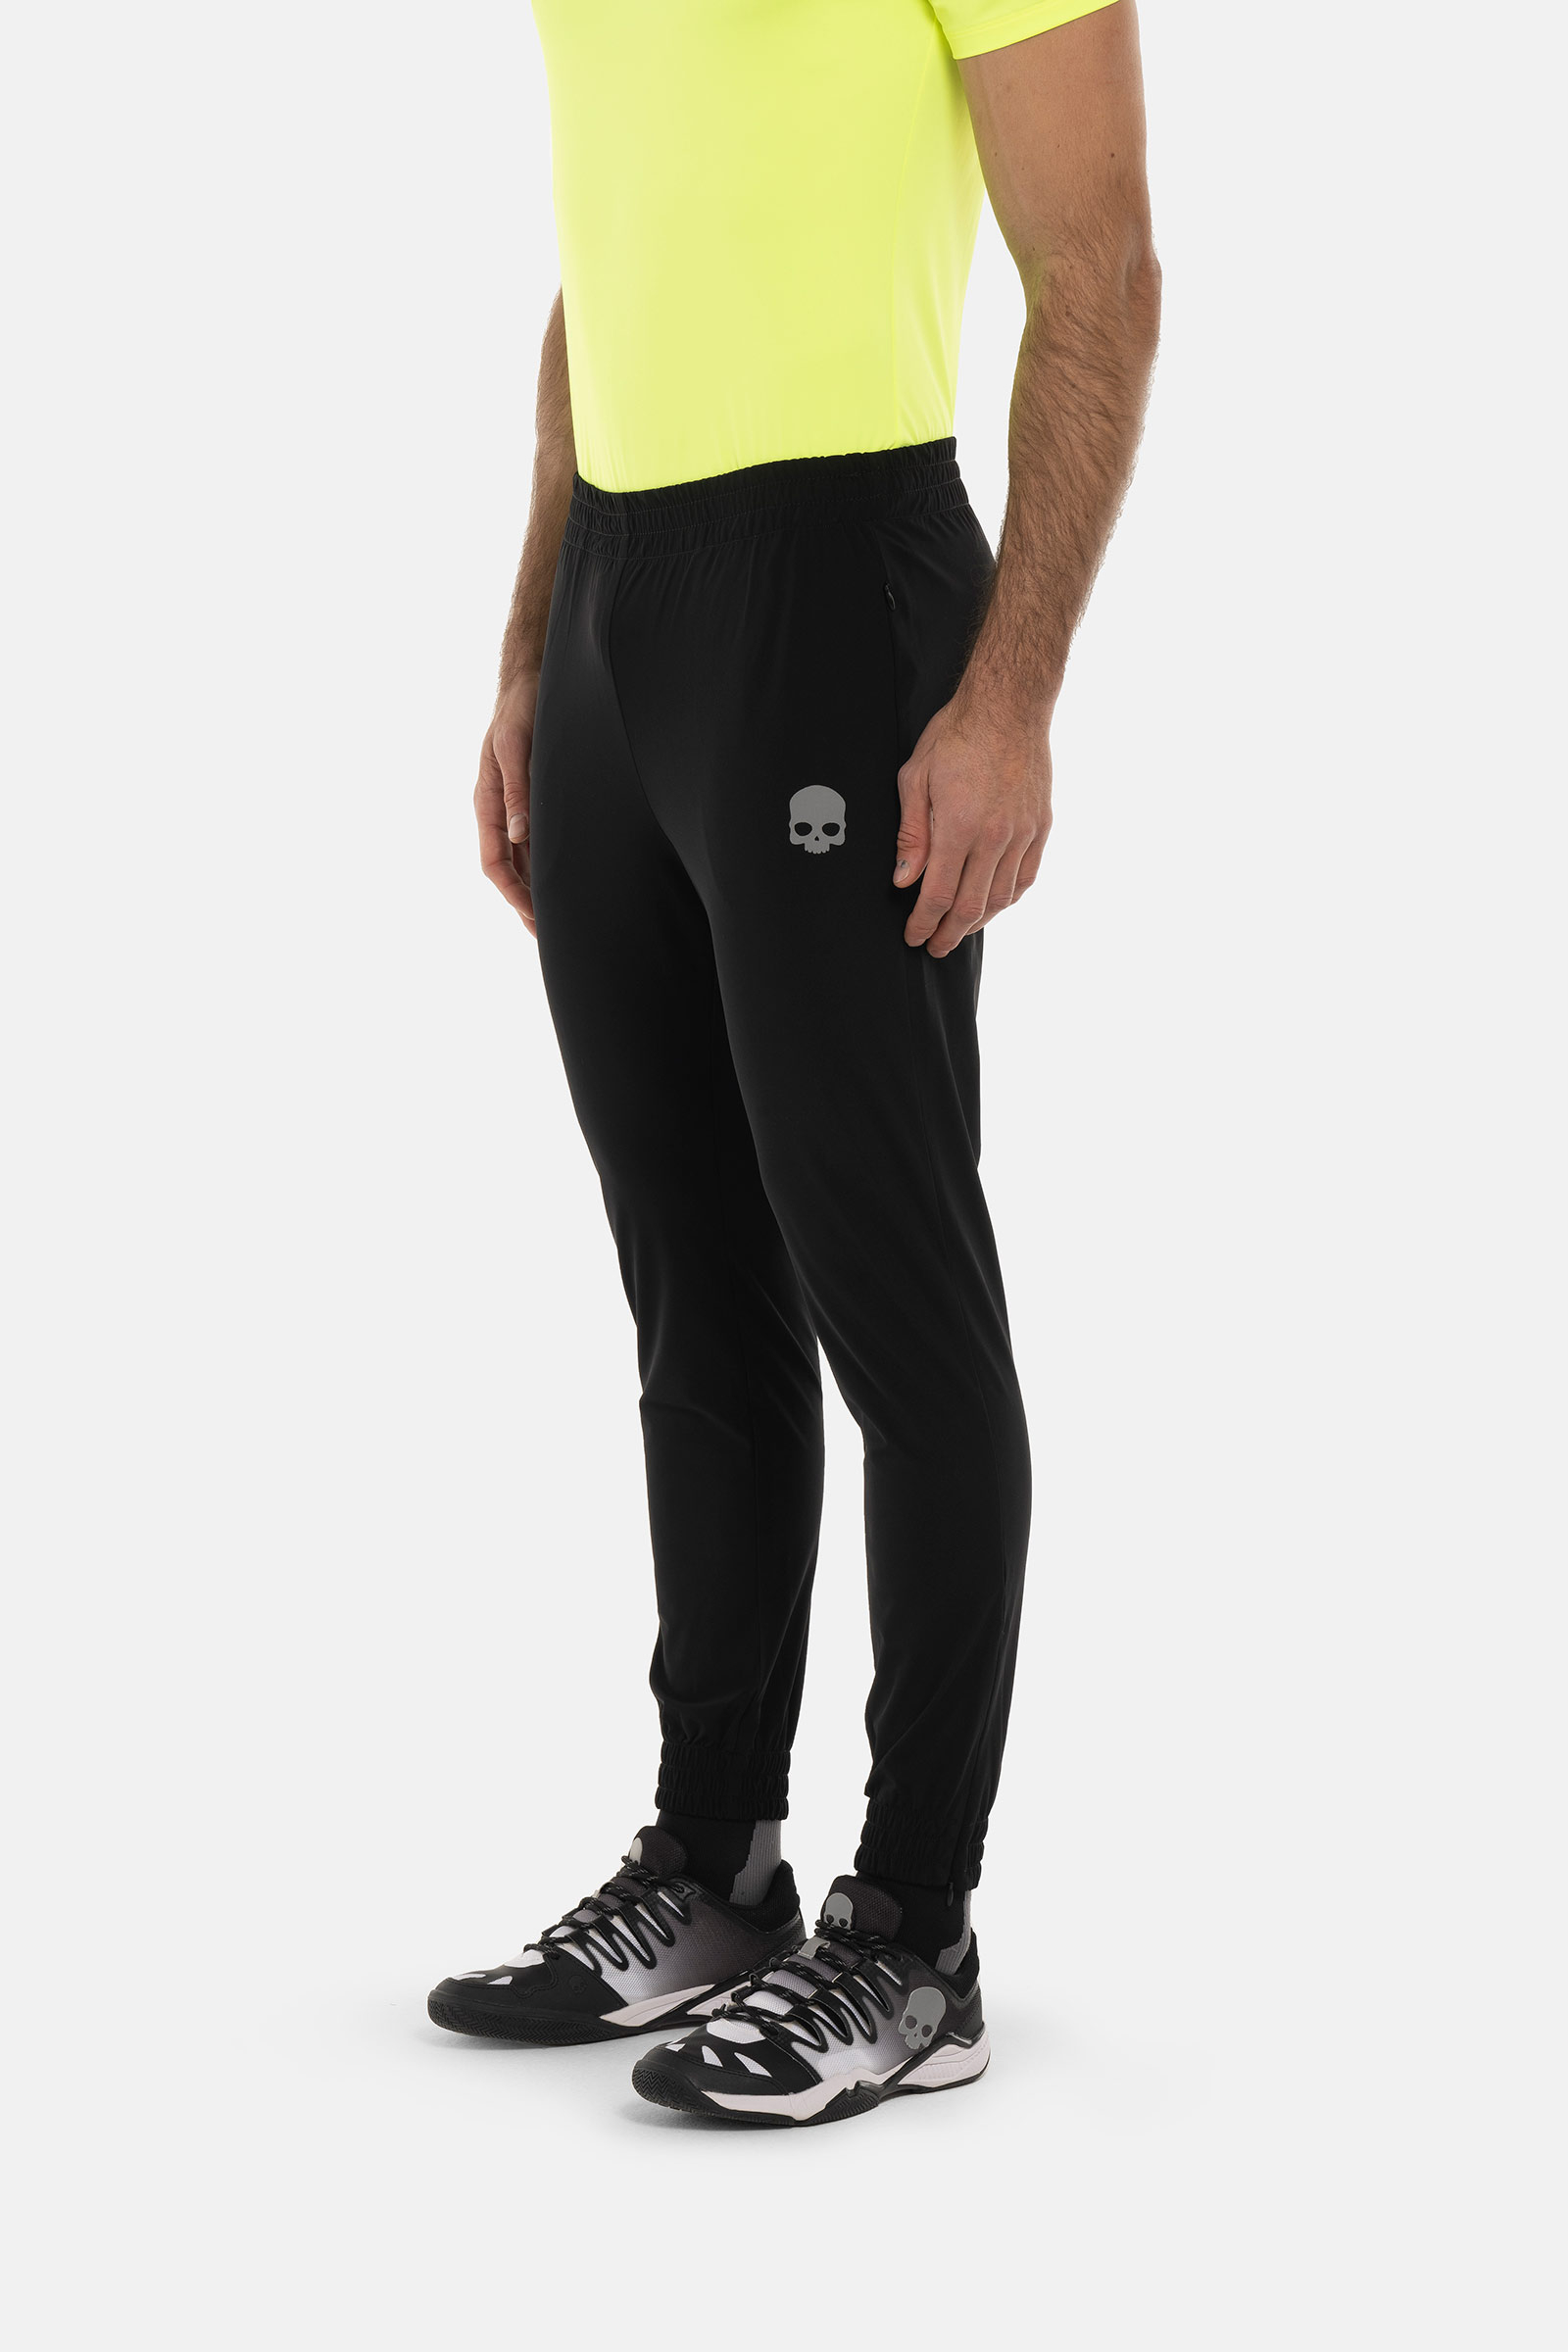 TECH PANTS SKULL - BLACK - Abbigliamento sportivo | Hydrogen